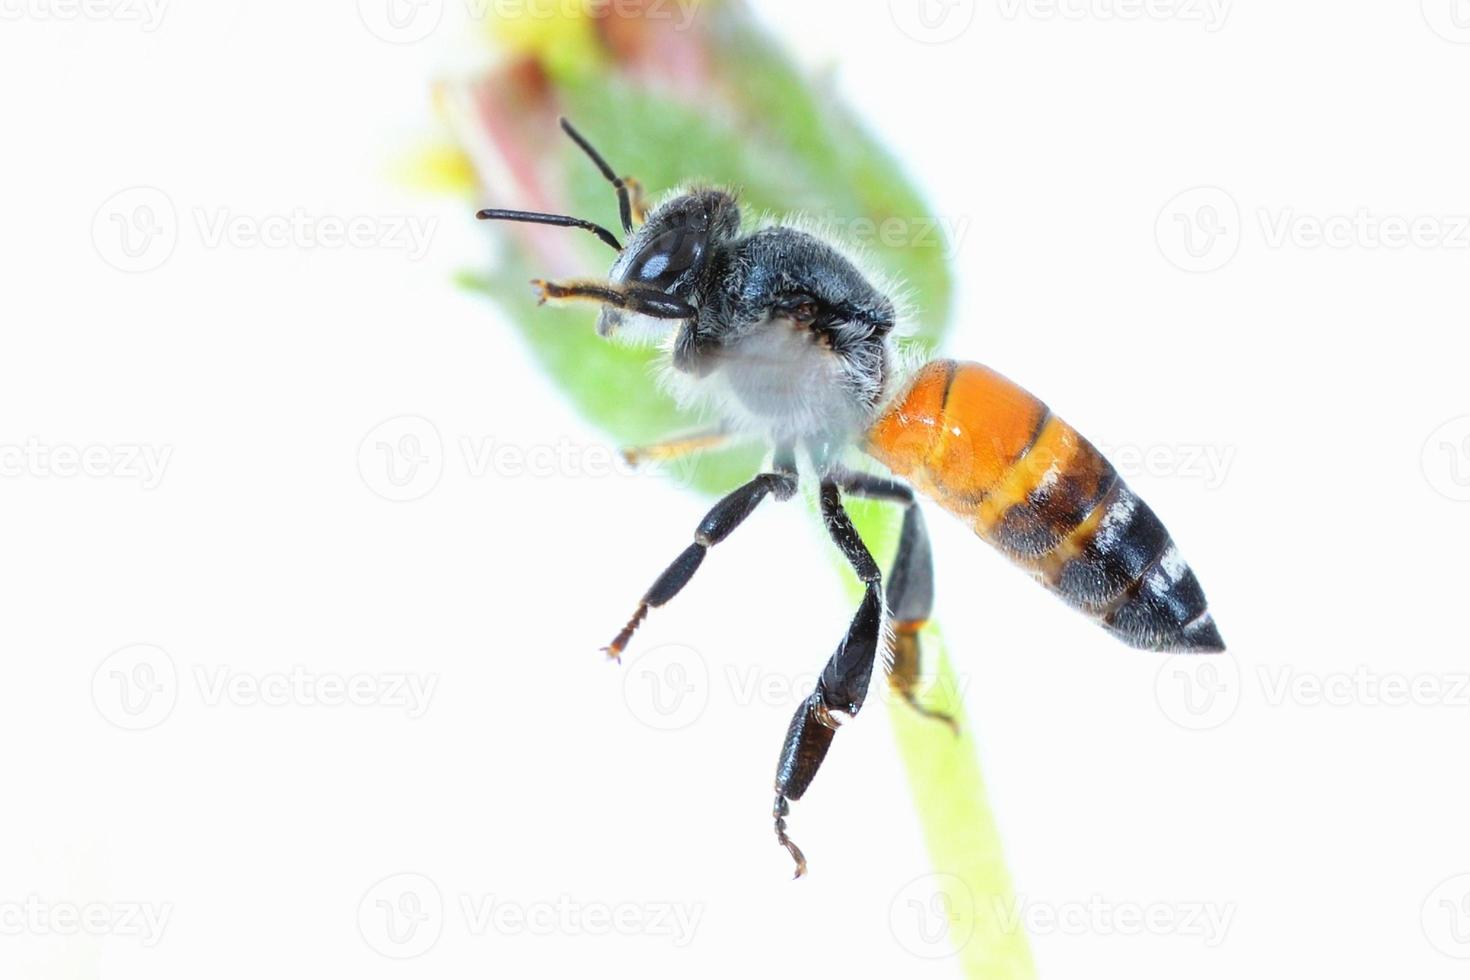 une abeille volante isolée sur fond blanc photo